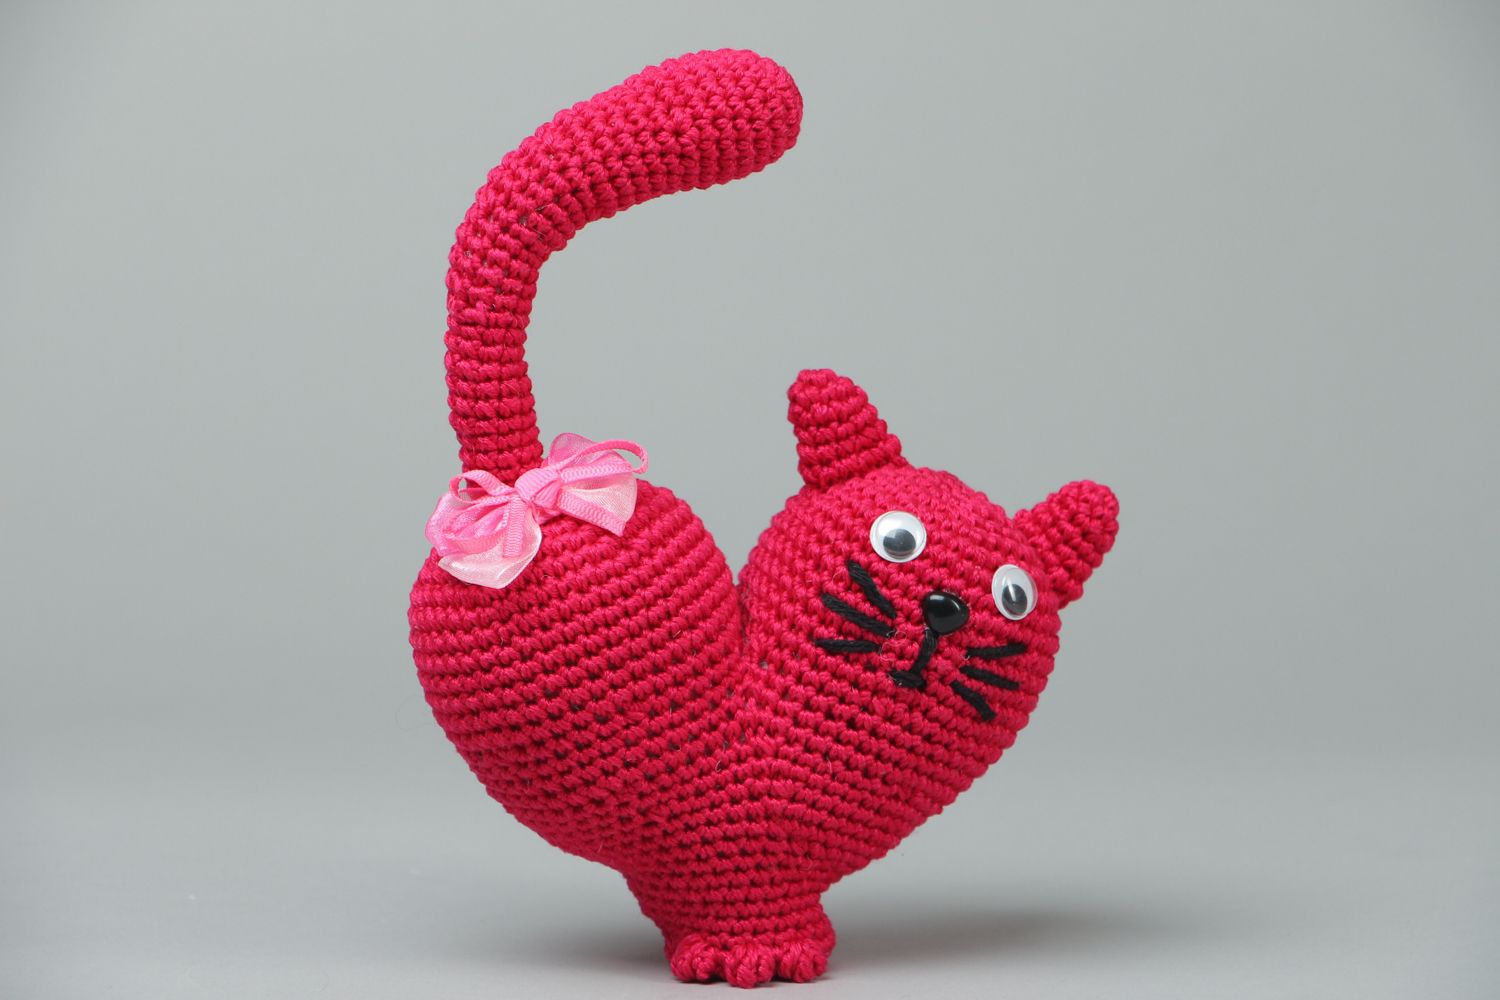 Crochet heart-shaped toy cat photo 1